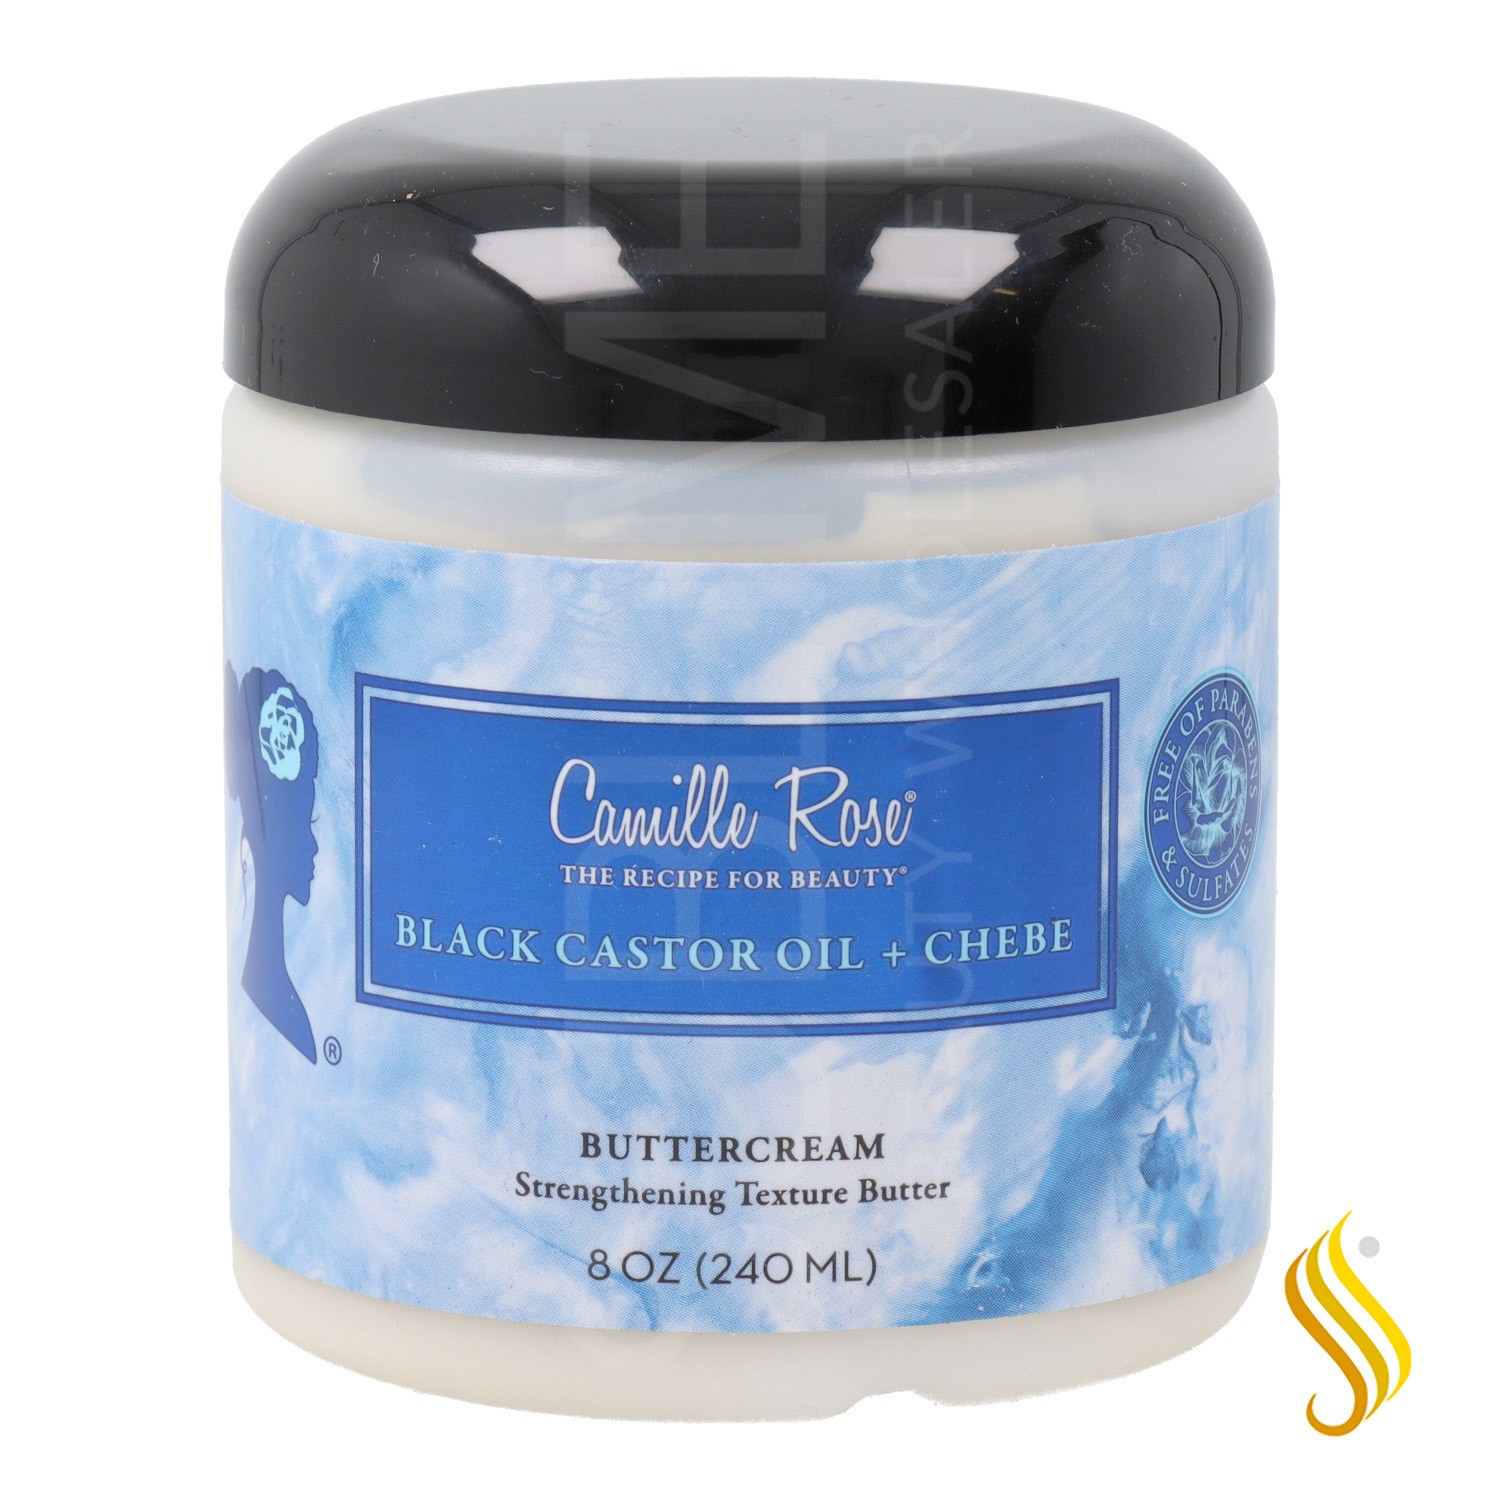 Camille Rose Black Castor Oil Chebe Strengthening Texture Butter 240Ml